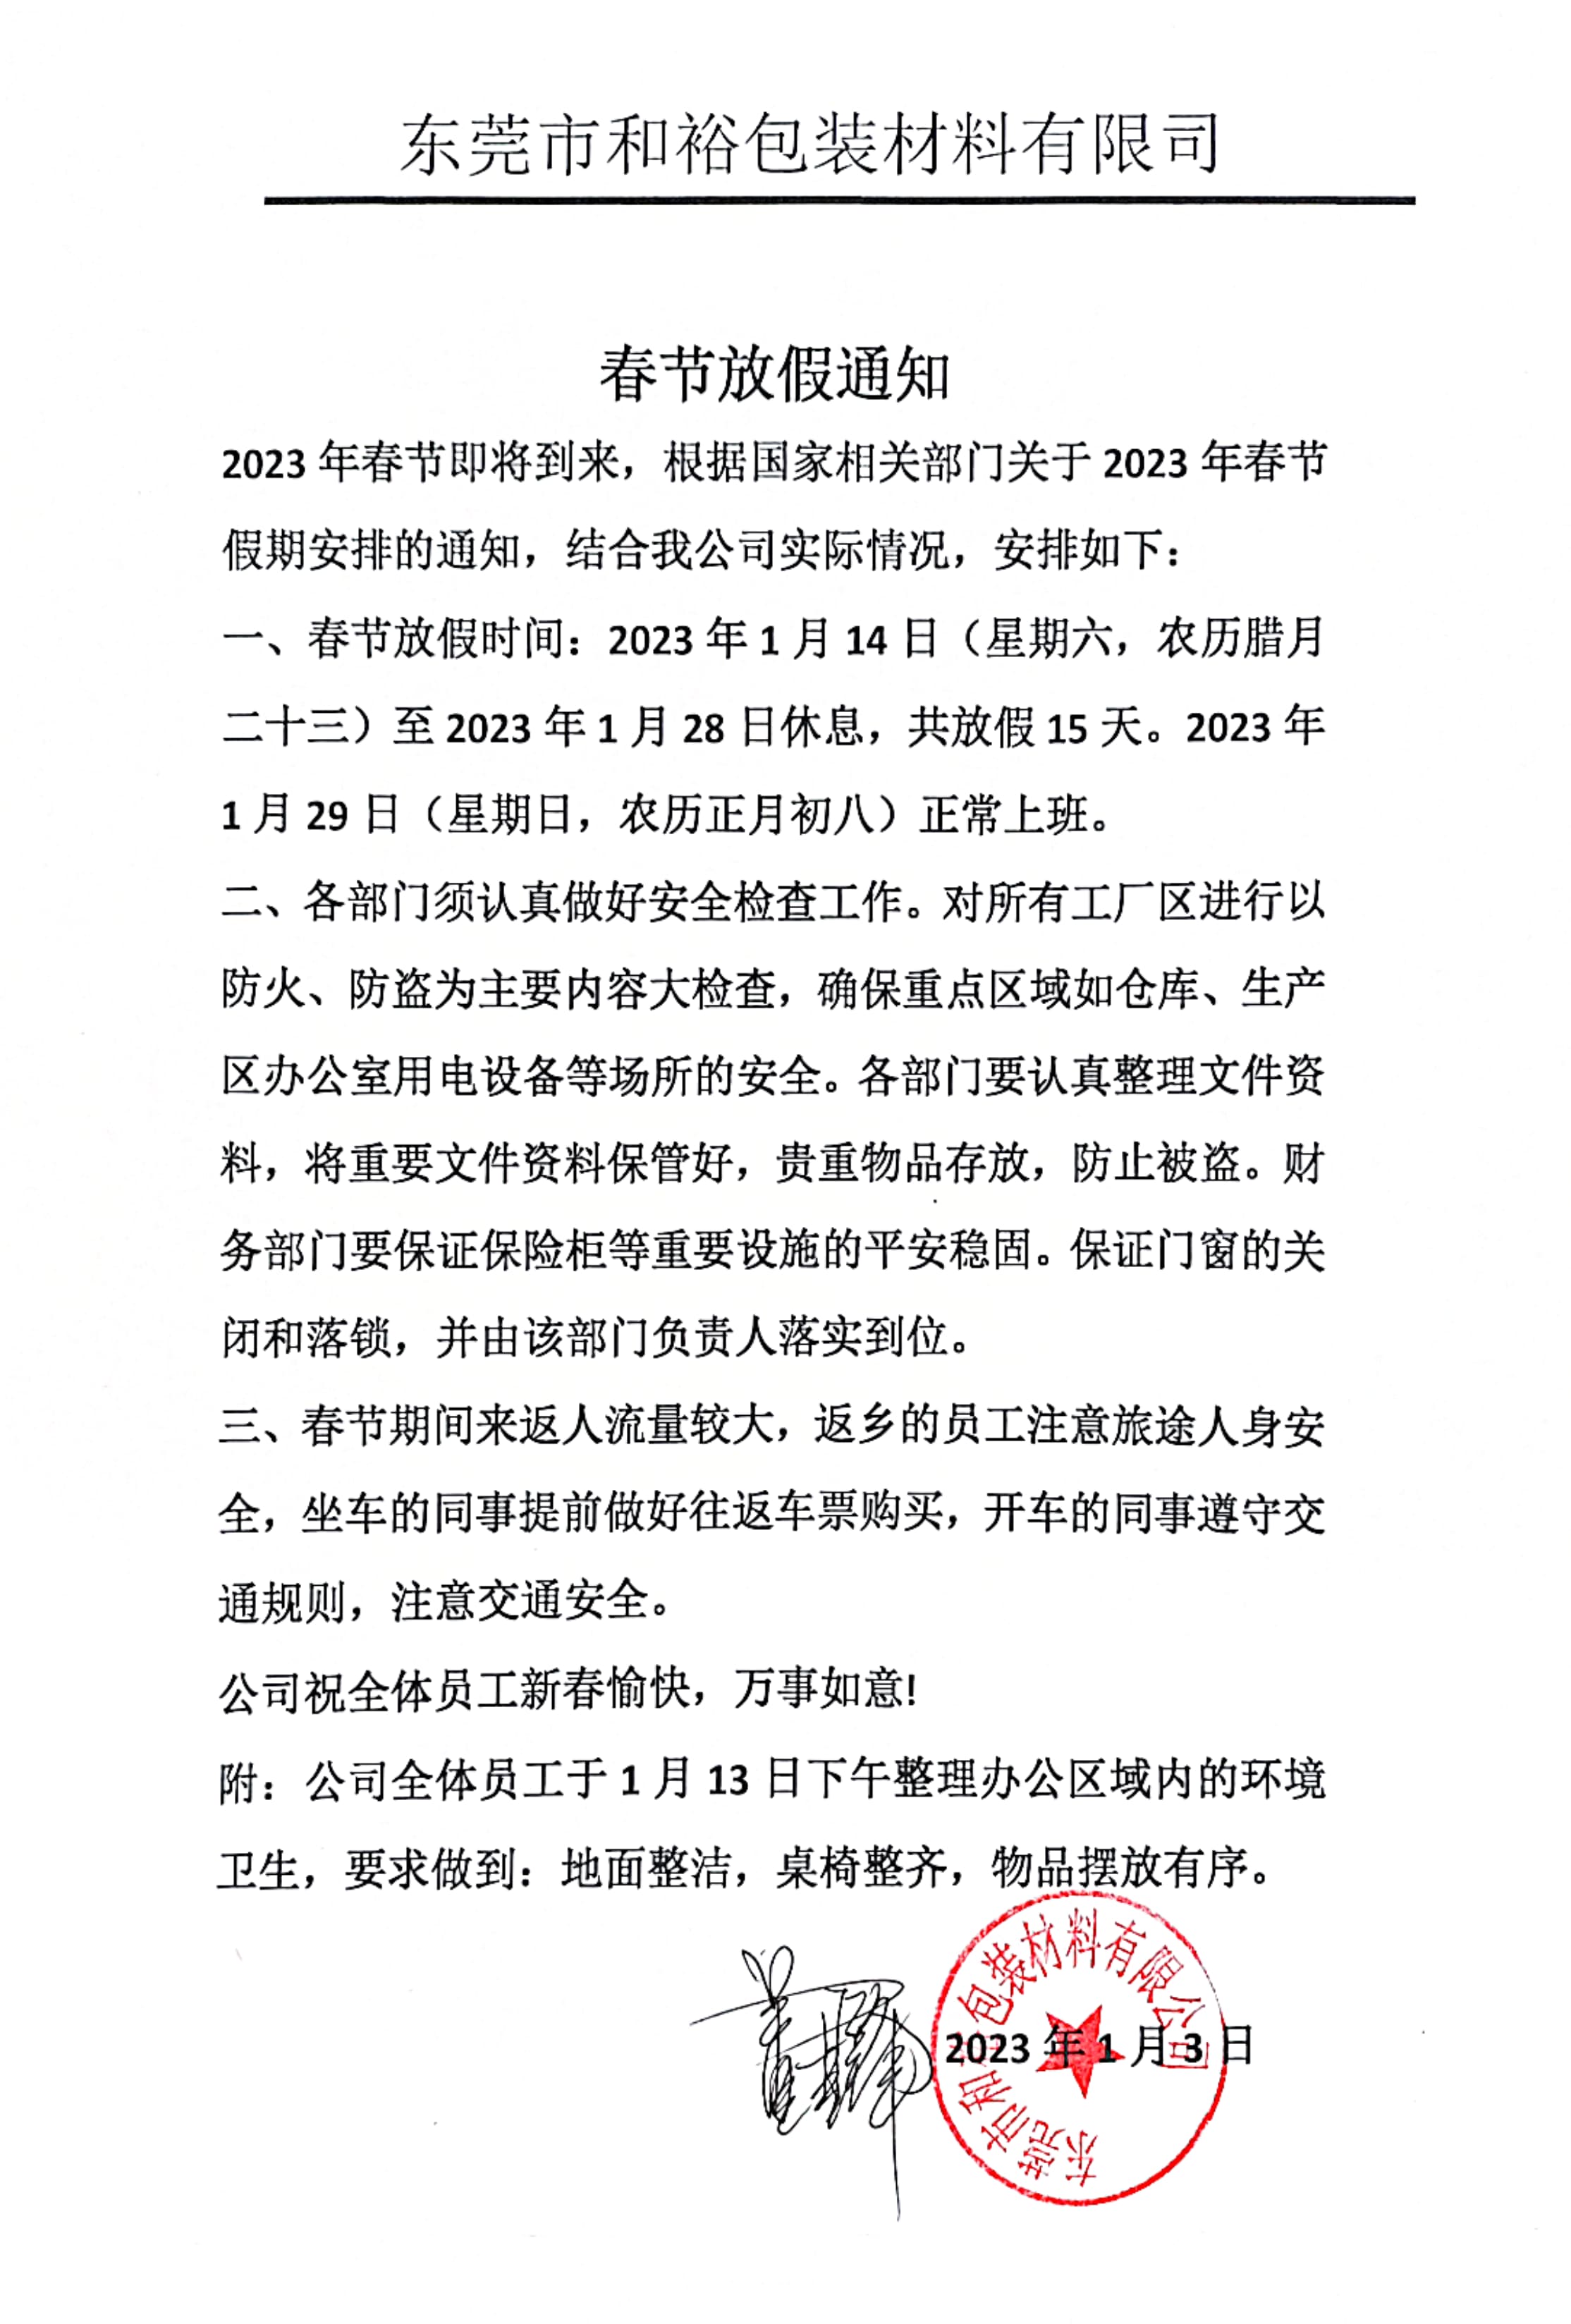 芜湖市2023年和裕包装春节放假通知